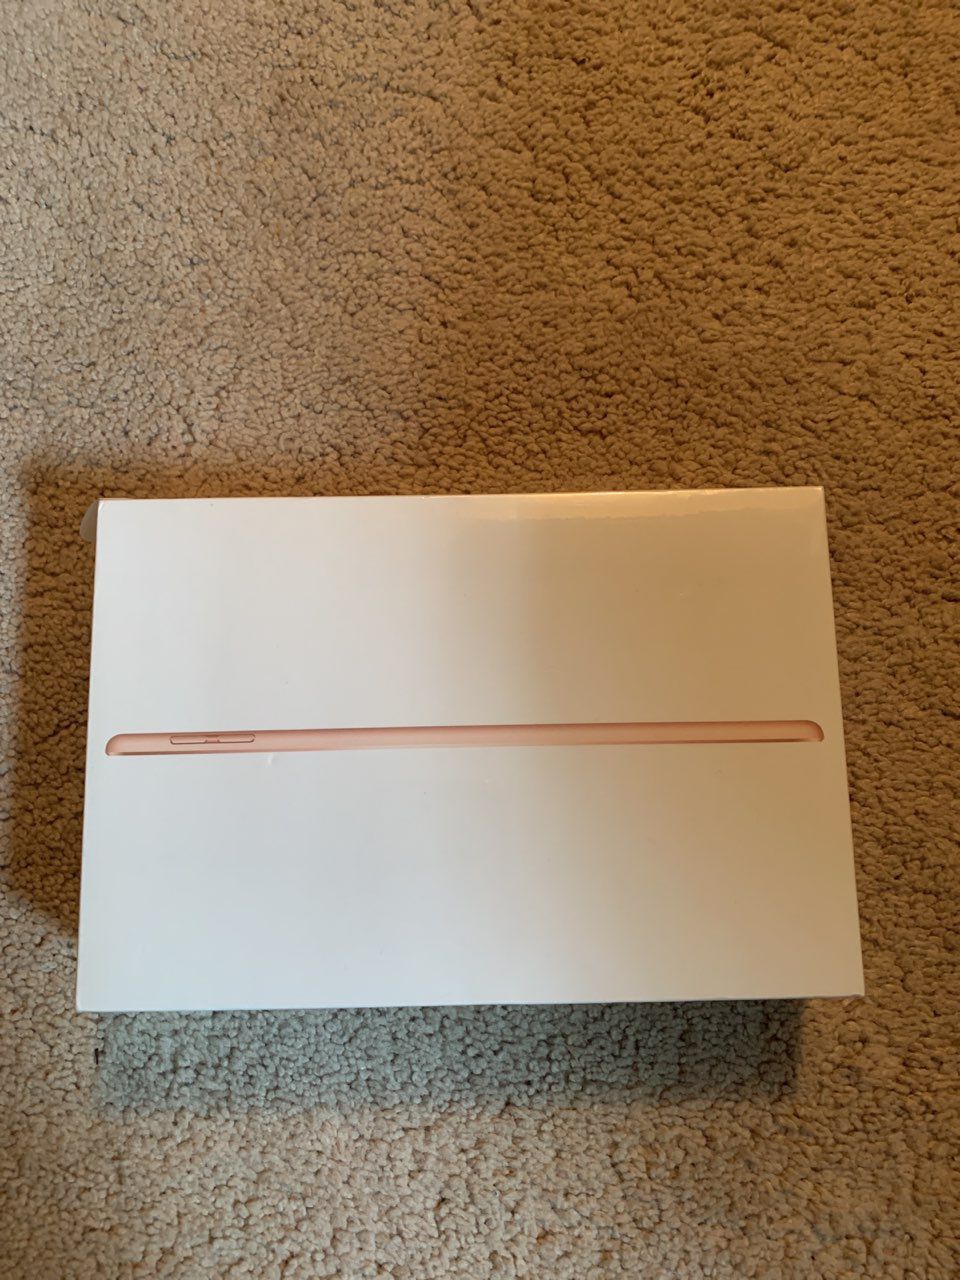 Brand new Apple iPad Mini (64gb, gold)